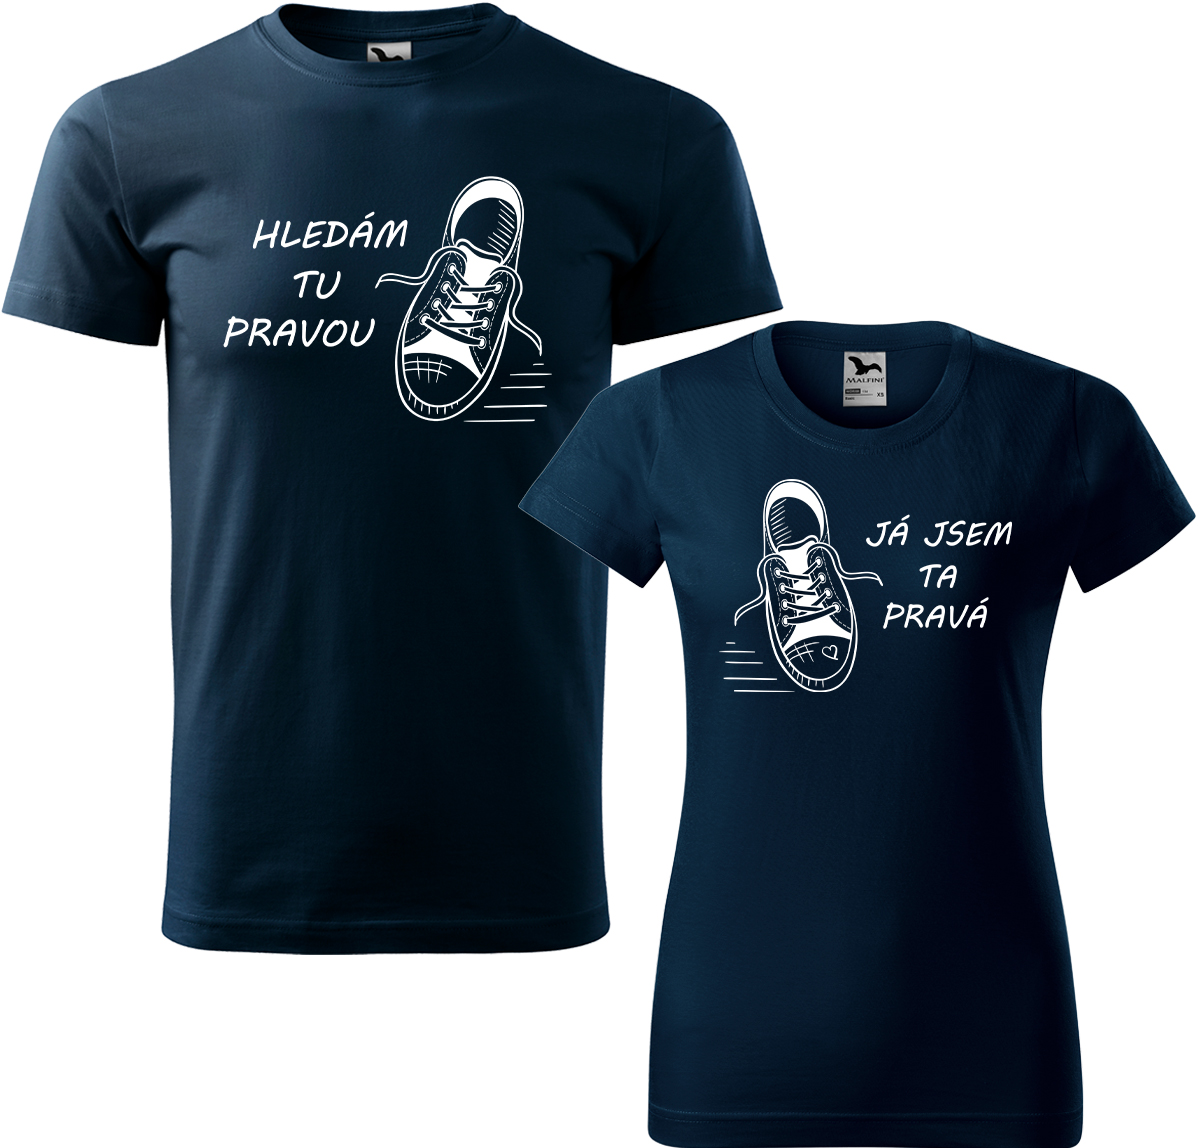 Trička pro páry - Kecky Barva: Námořní modrá (02), Velikost dámské tričko: L, Velikost pánské tričko: L